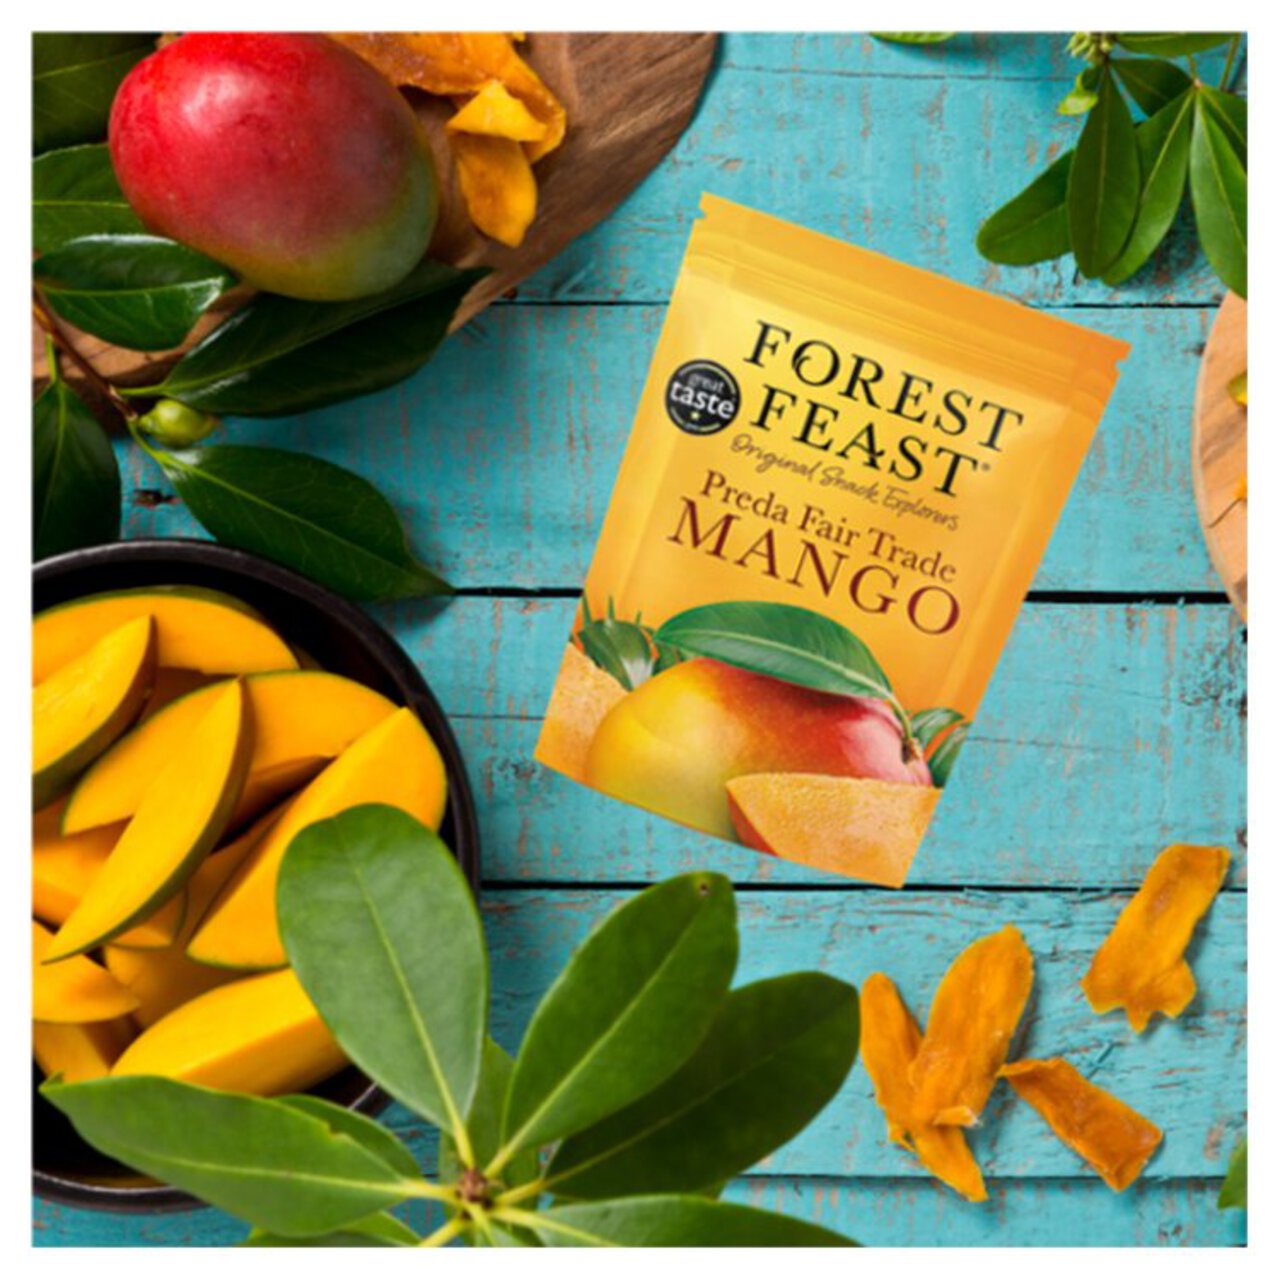 Forest Feast Preda Mango 100g